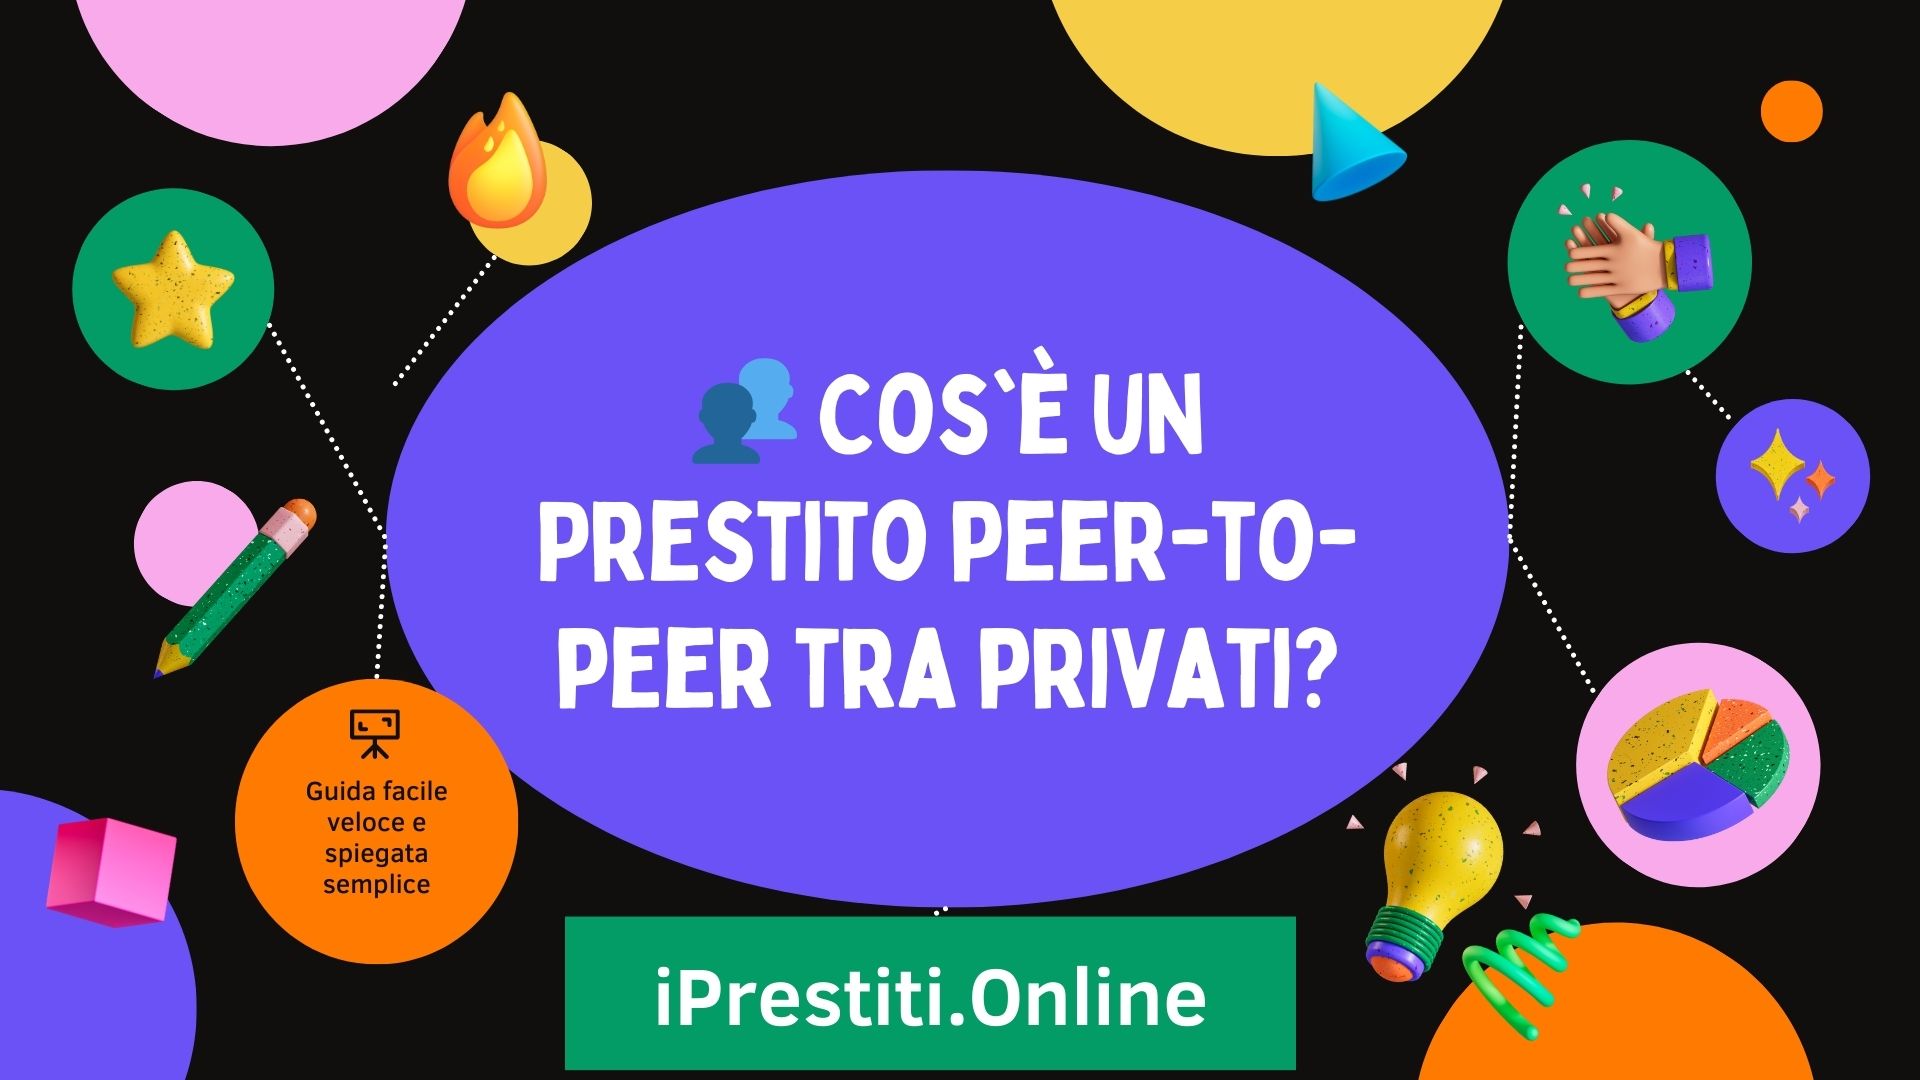 Cos'è un Prestito peer-to-peer tra privati?